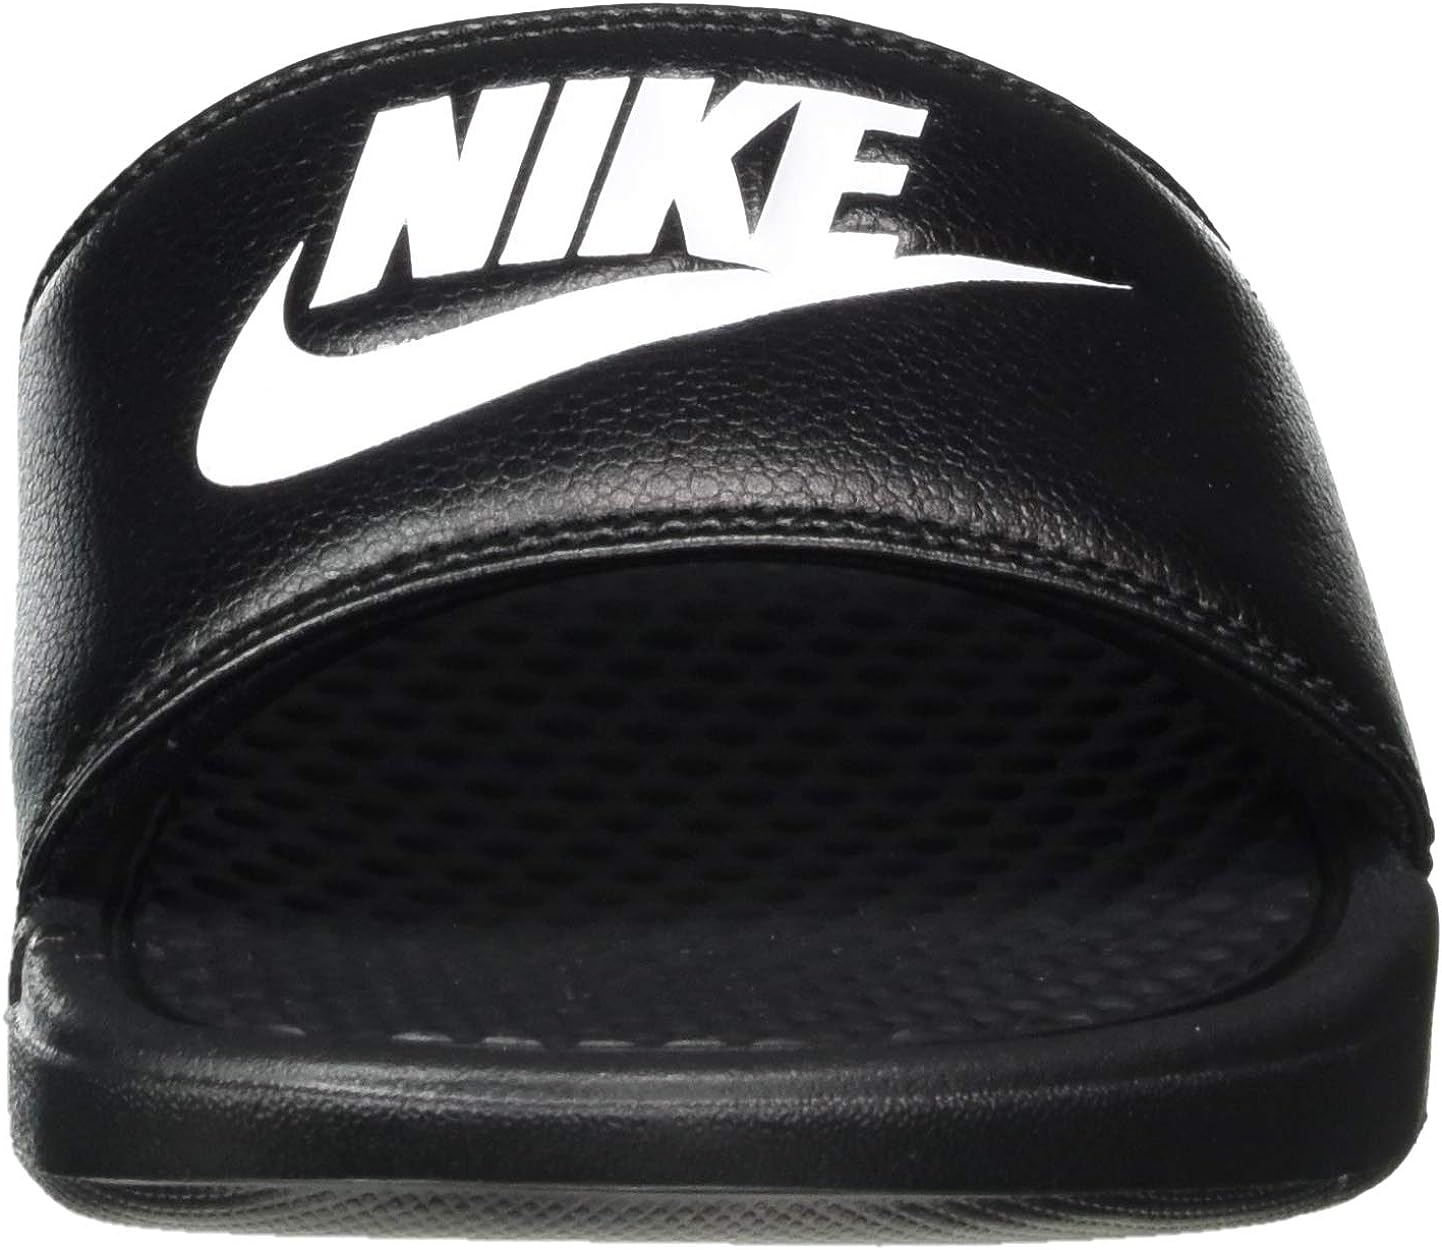 Nike Men's Benassi Just Do It Athletic Sandal 15 Black/White Noir/Blanc